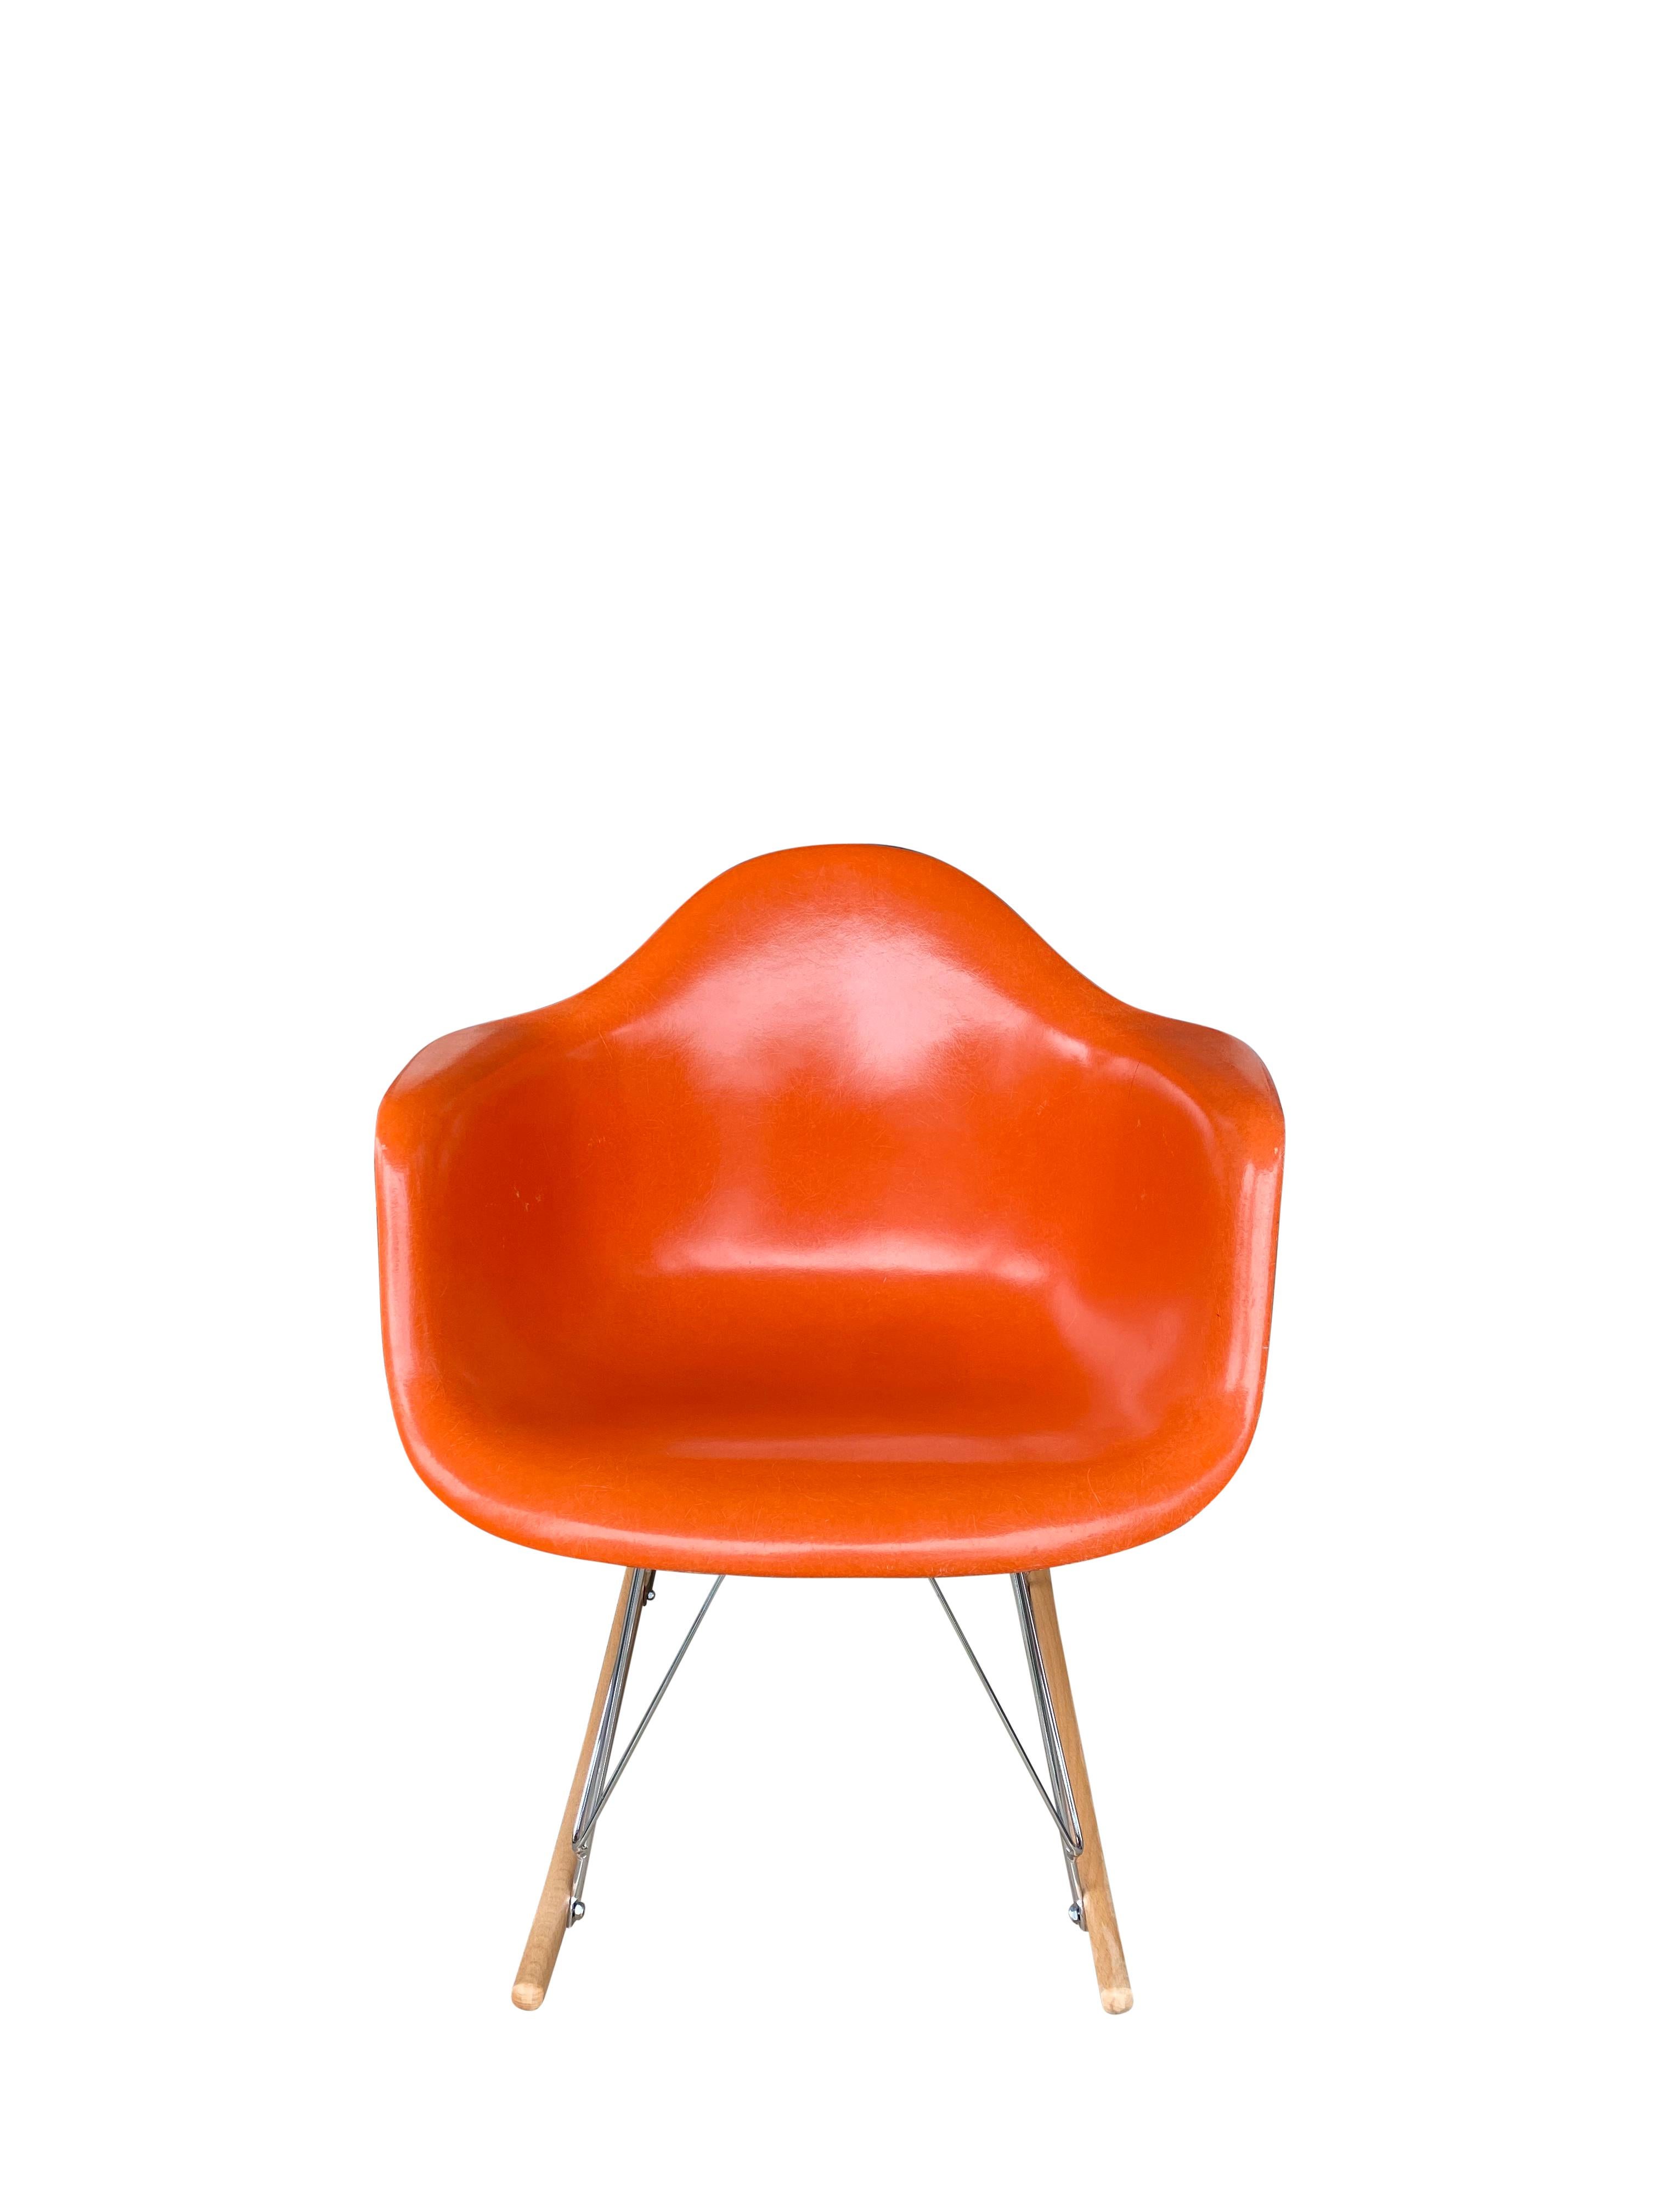 Wunderschöne Ausgabe des Schaukelstuhls Modell RAR von Charles und Ray Eames, hergestellt von Herman Miller. Saubere Schale mit wunderschönem und lebhaftem rot-orangem Farbton und ohne Risse oder Löcher. Signiert Herman Miller und garantiert